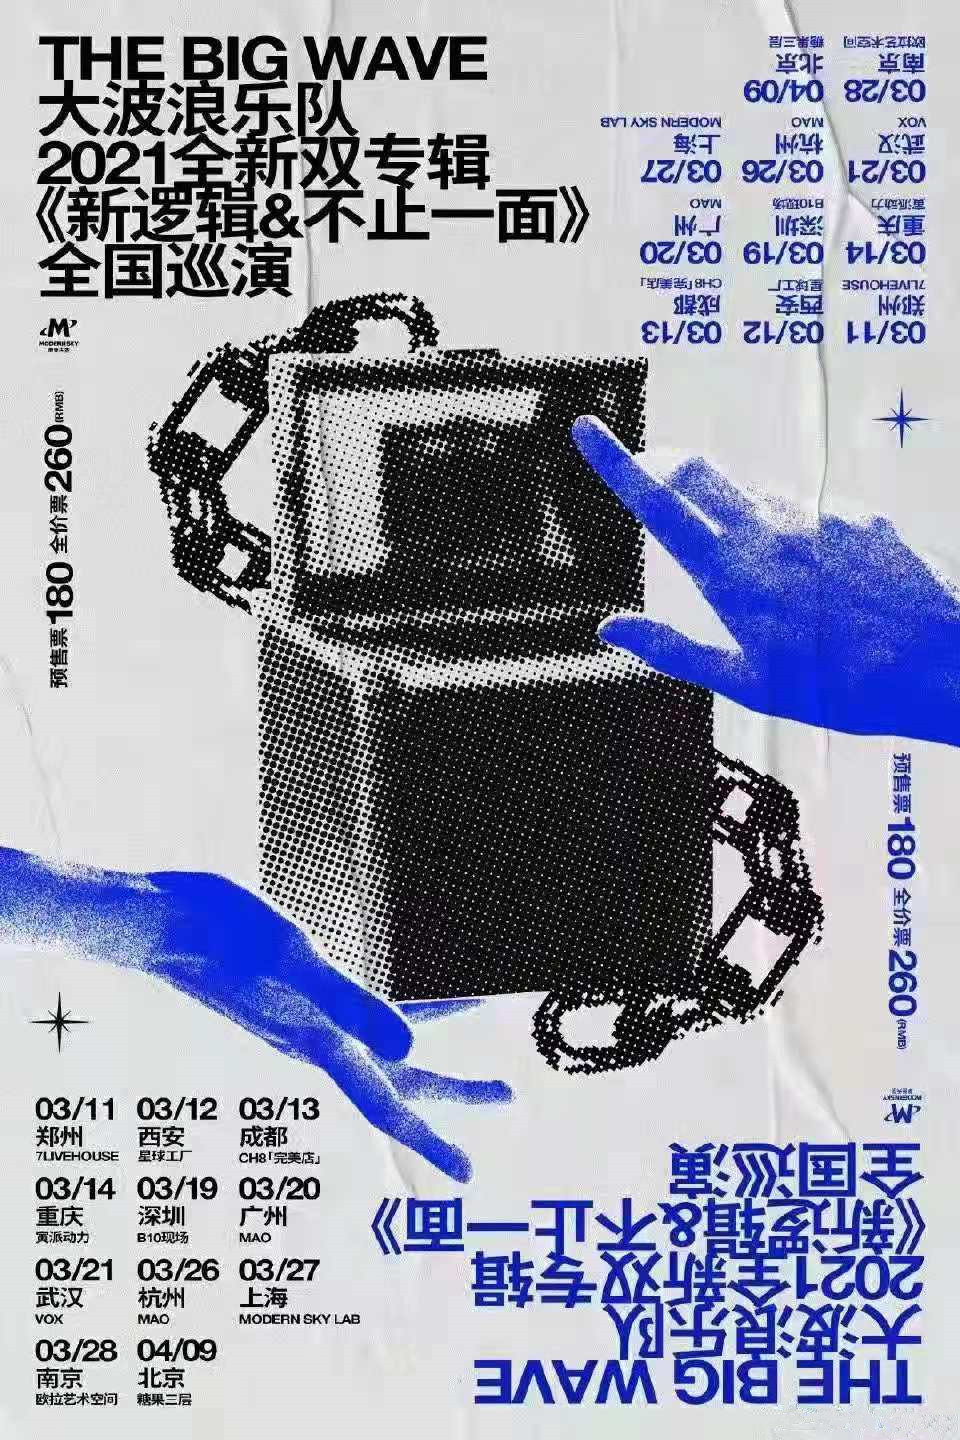 大波浪乐队2021全新双专辑巡演《新逻辑》《不止一面》全国巡演-郑州站